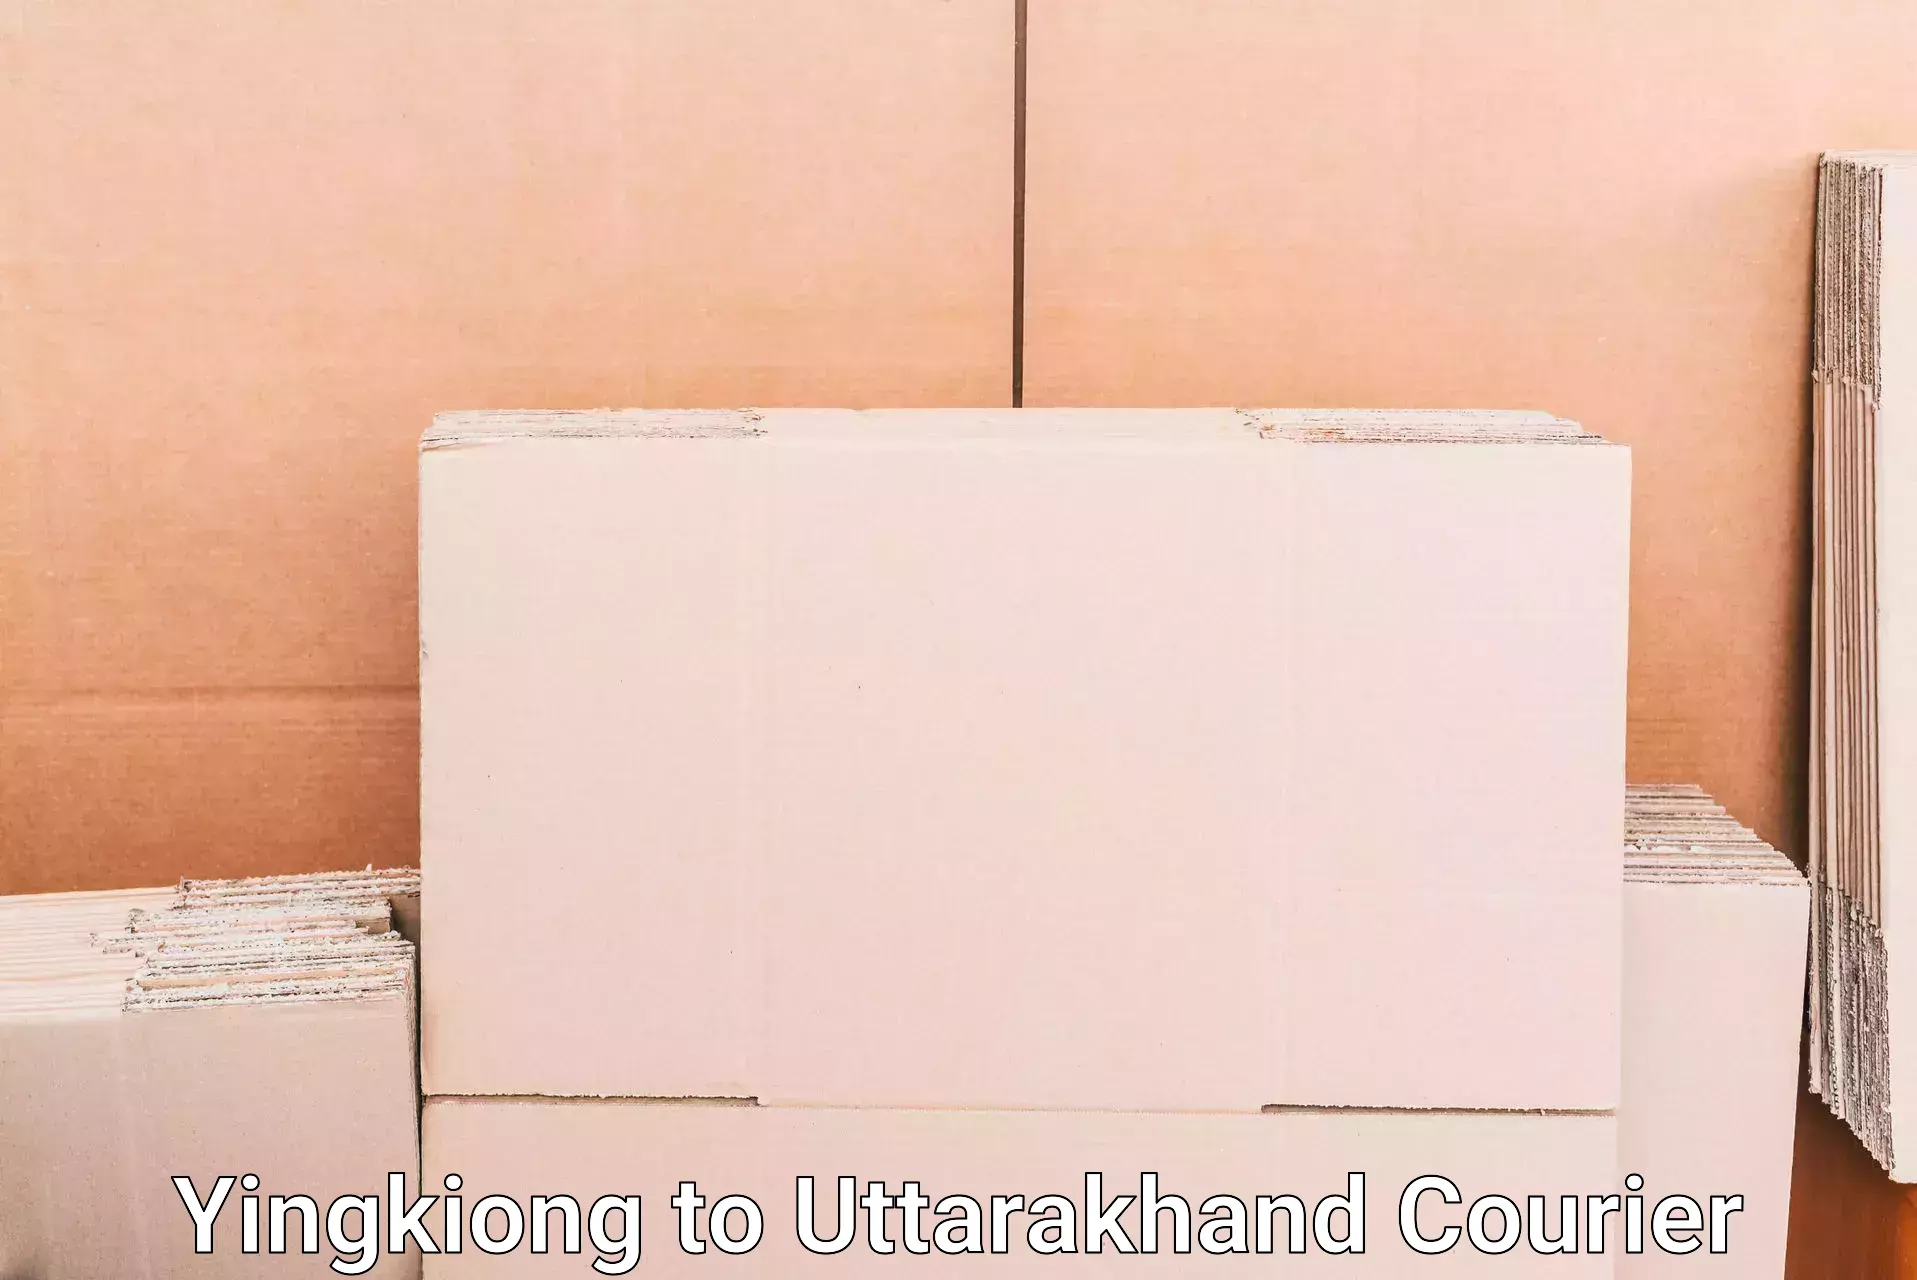 Luggage delivery network Yingkiong to Uttarkashi